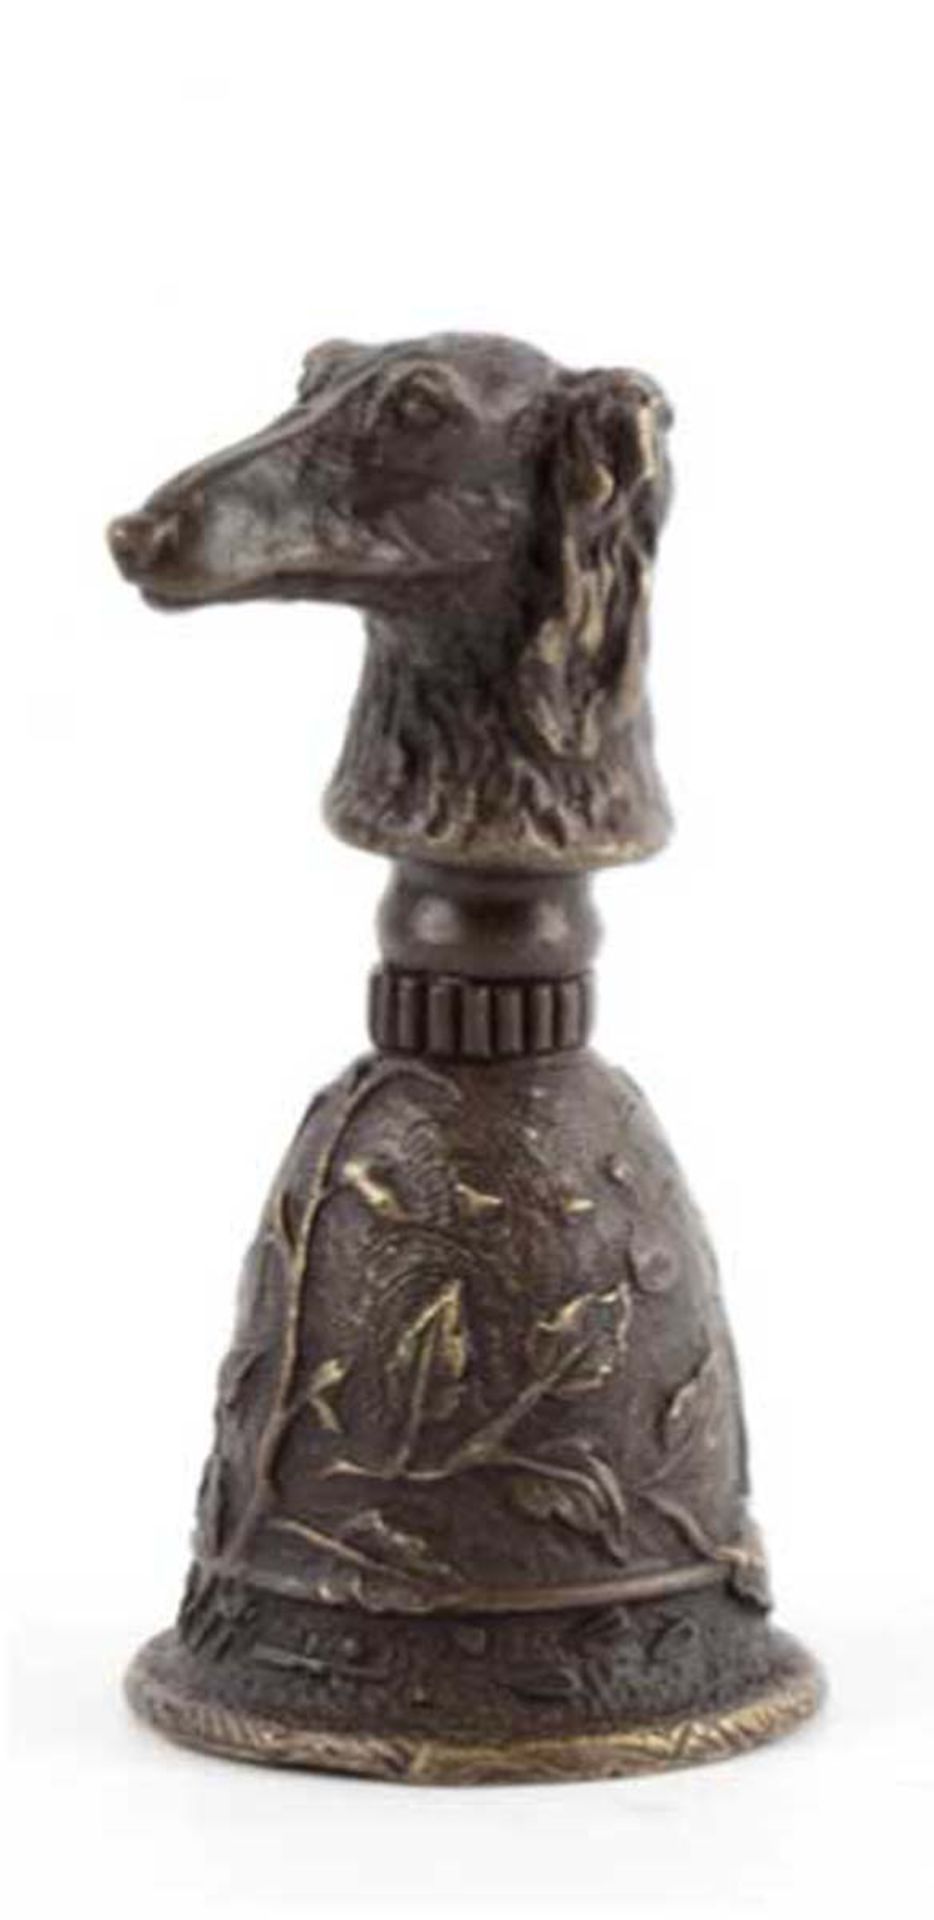 Bronze-Tischglocke mit Hundekopf als Handhabe, signiert "Casaro", Nachguß 20. Jh., braunpatiniert,